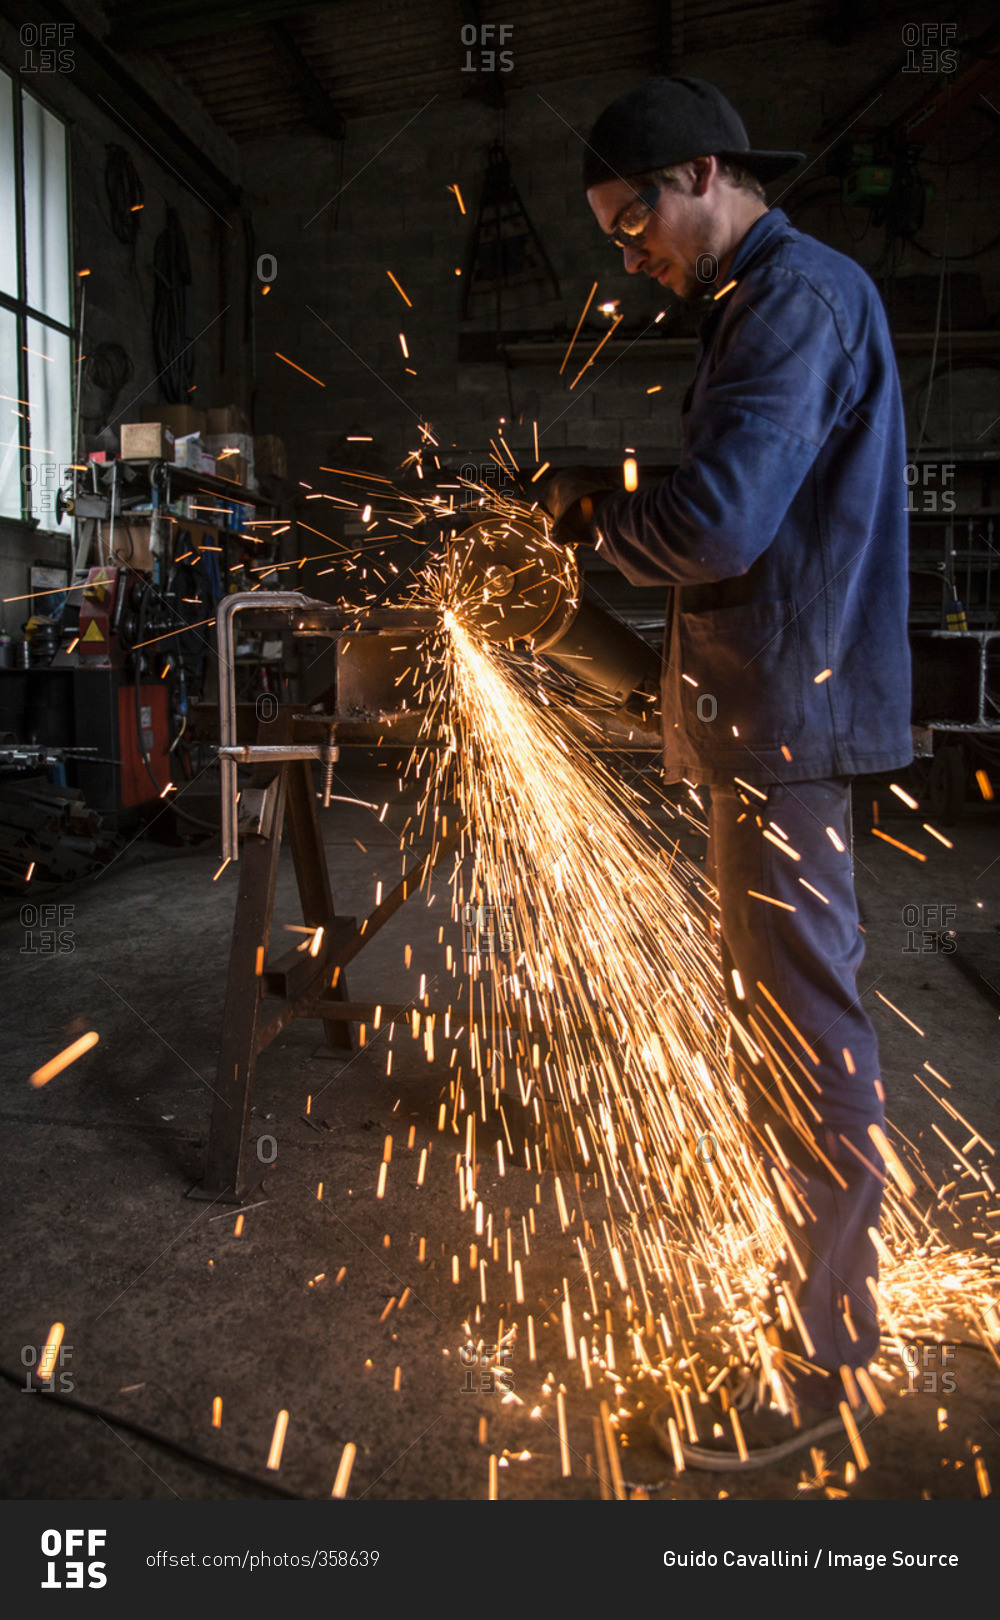 Welder cutting iron in workshop